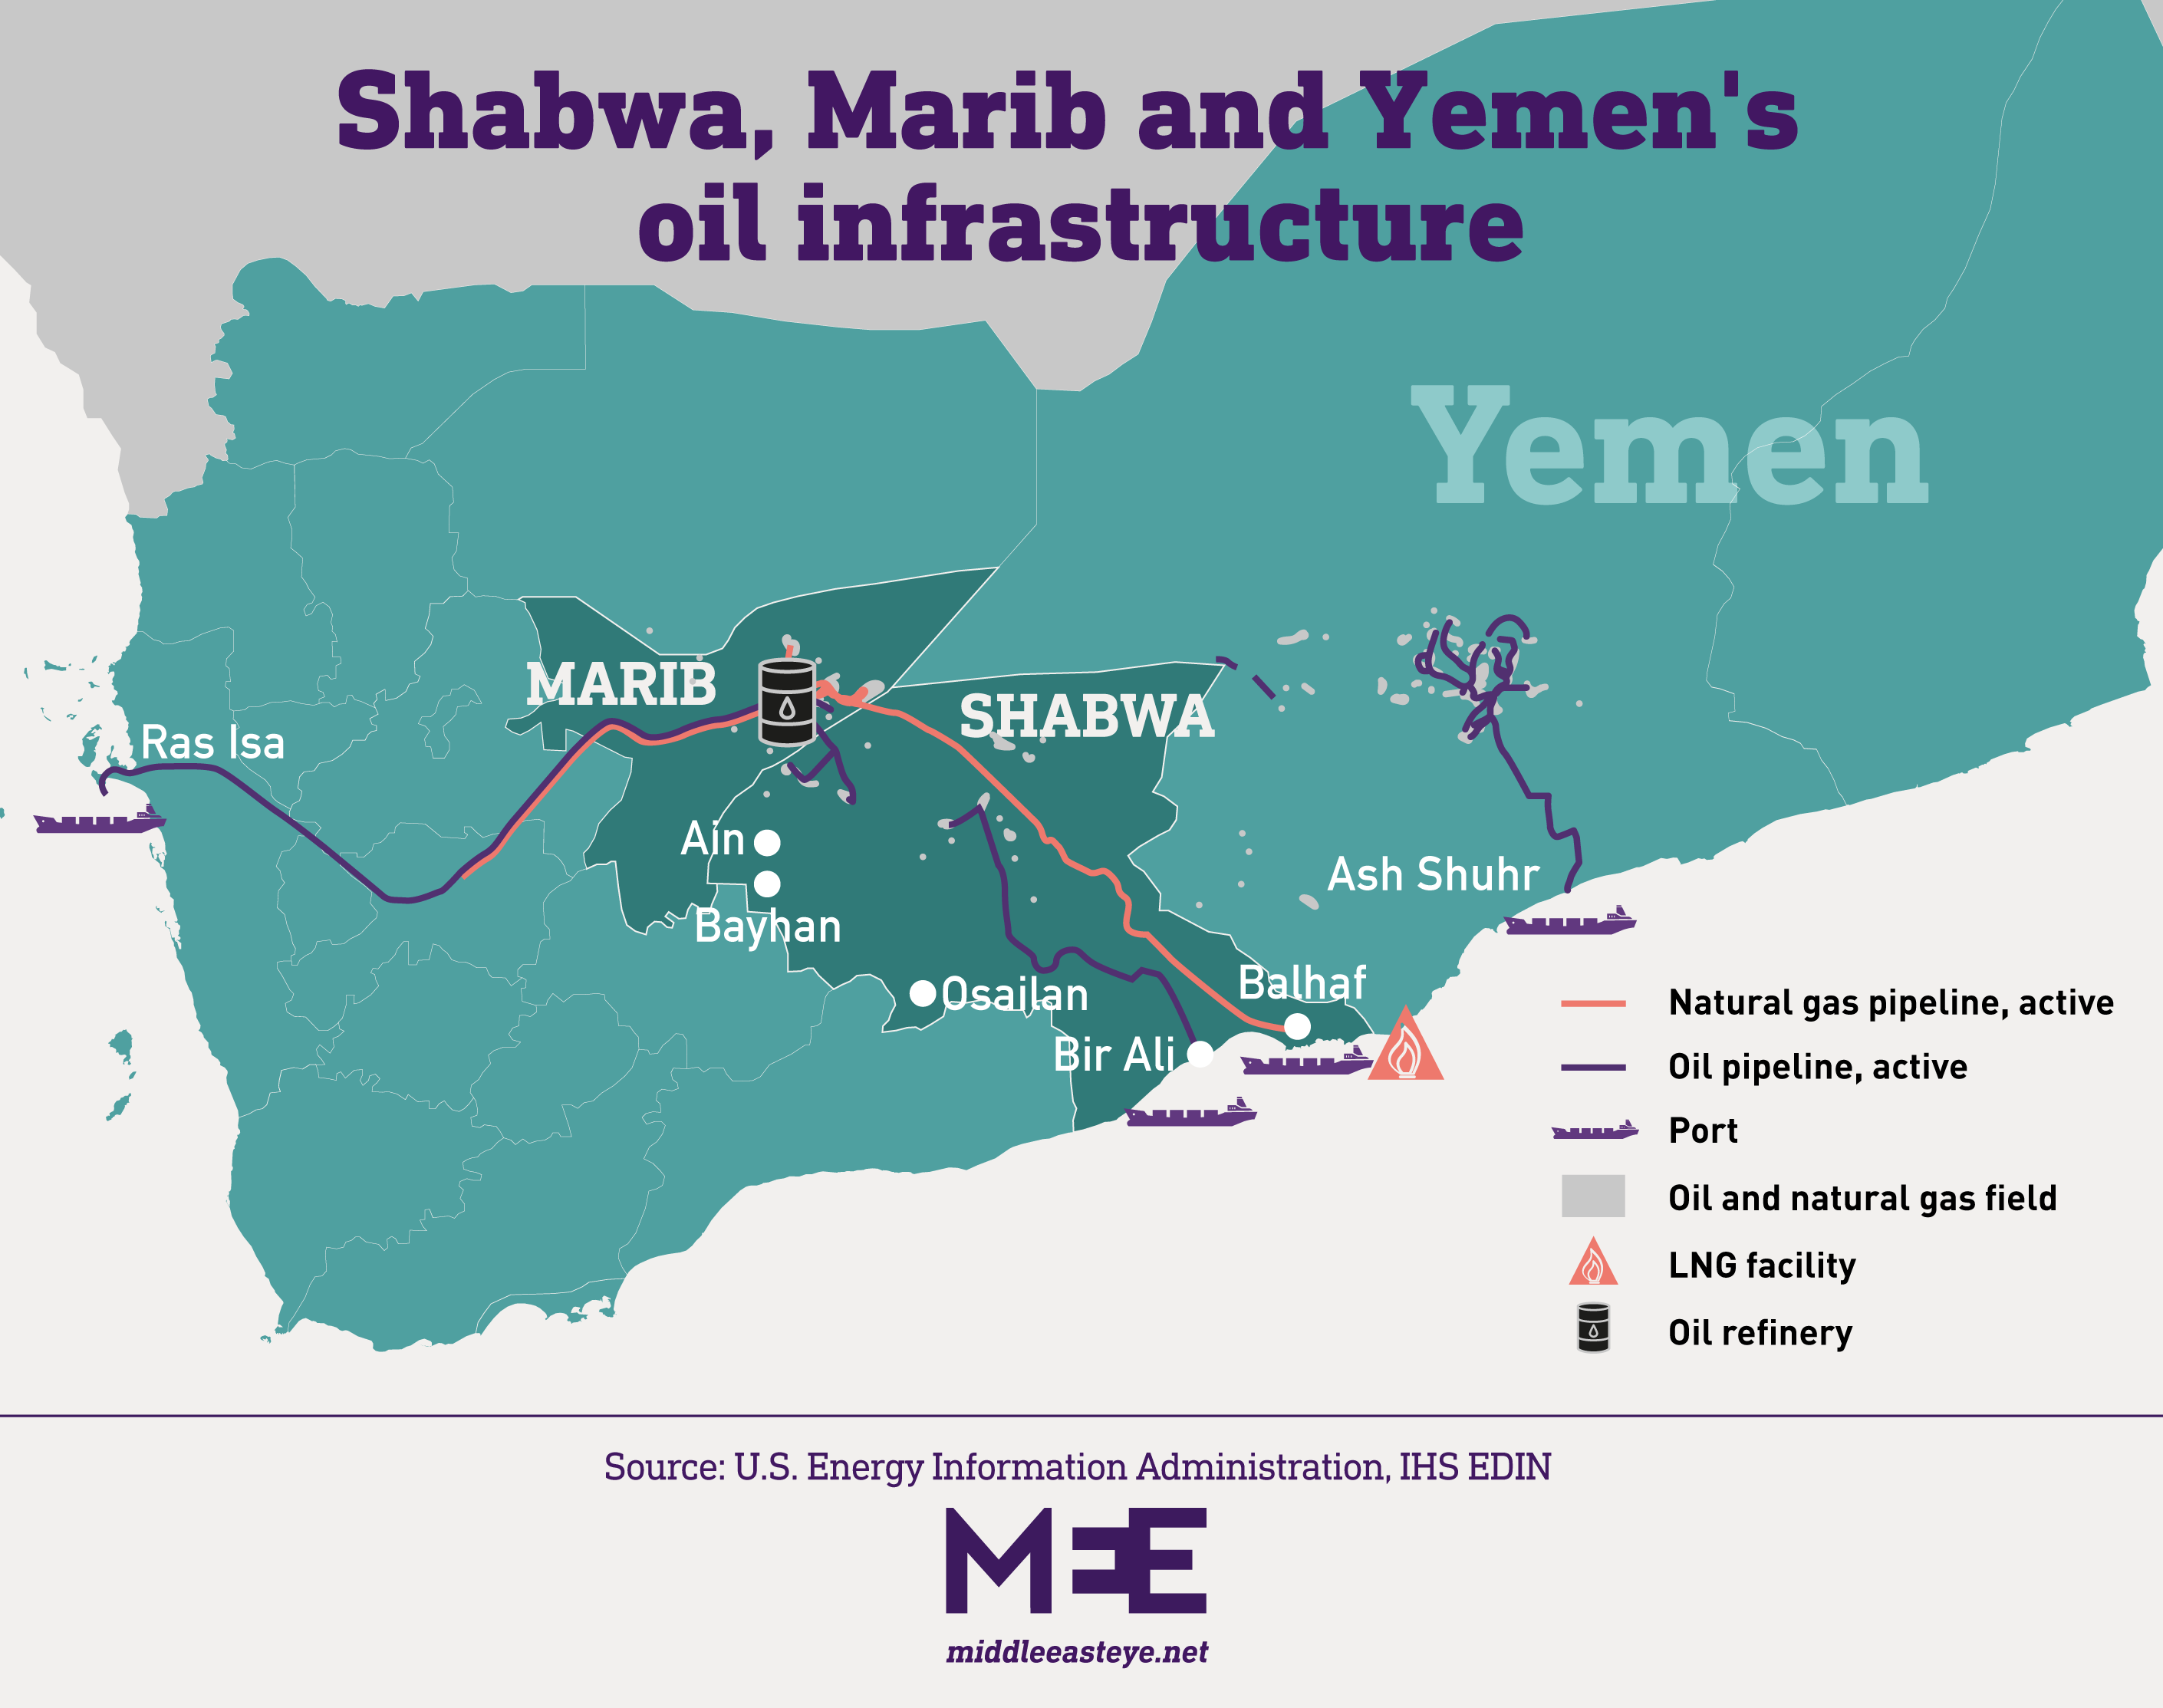 Shabwa, Marib and Yemen's oil infrastructure